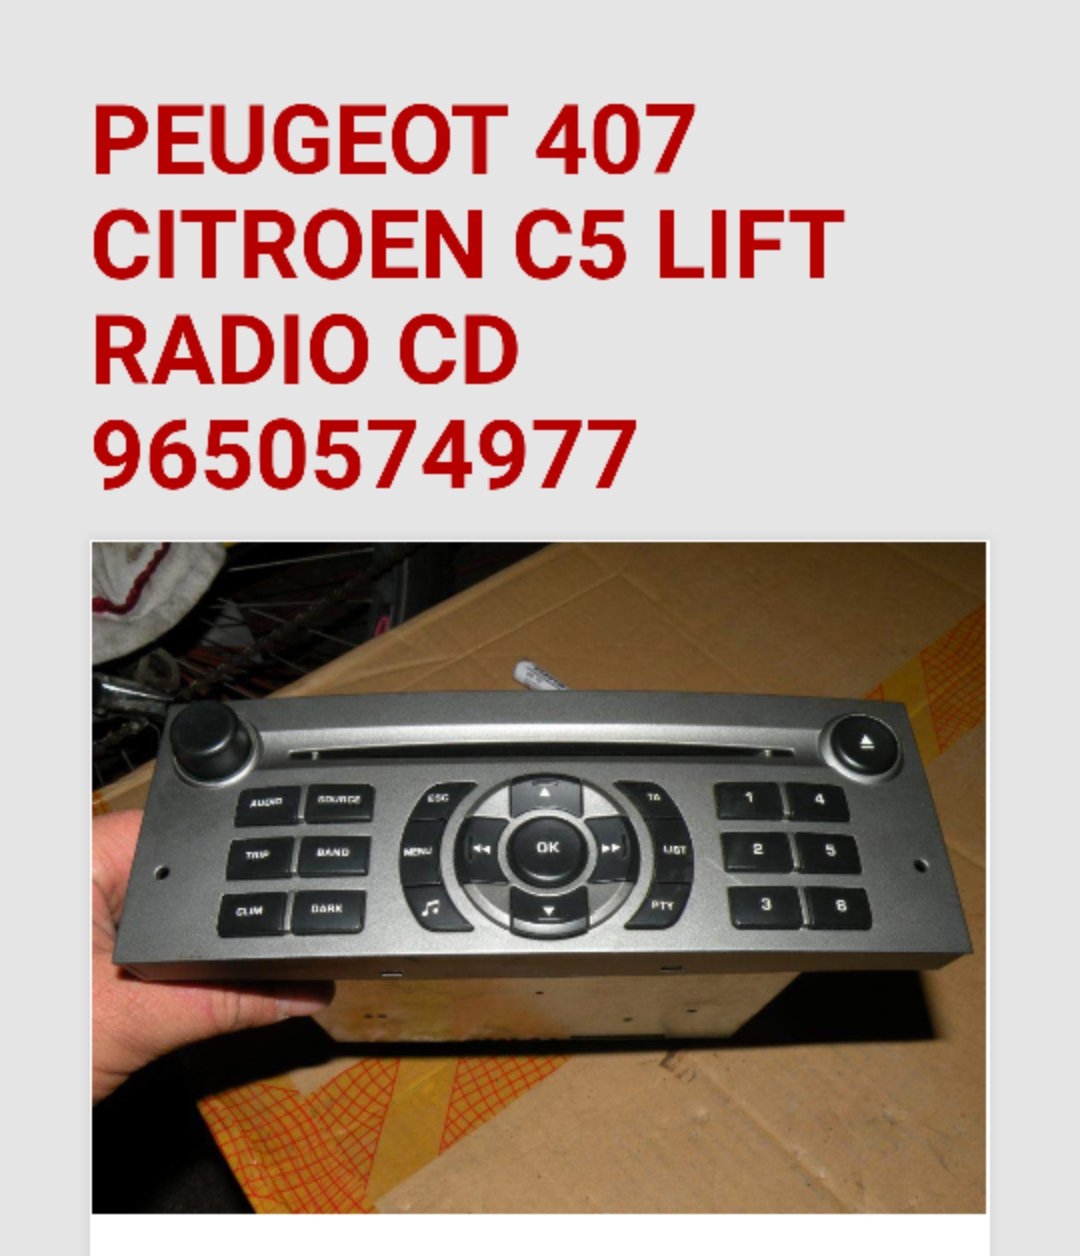 Aux w radiu z Peugeot 407 07r. Jak dorobic aux w tym radiu?